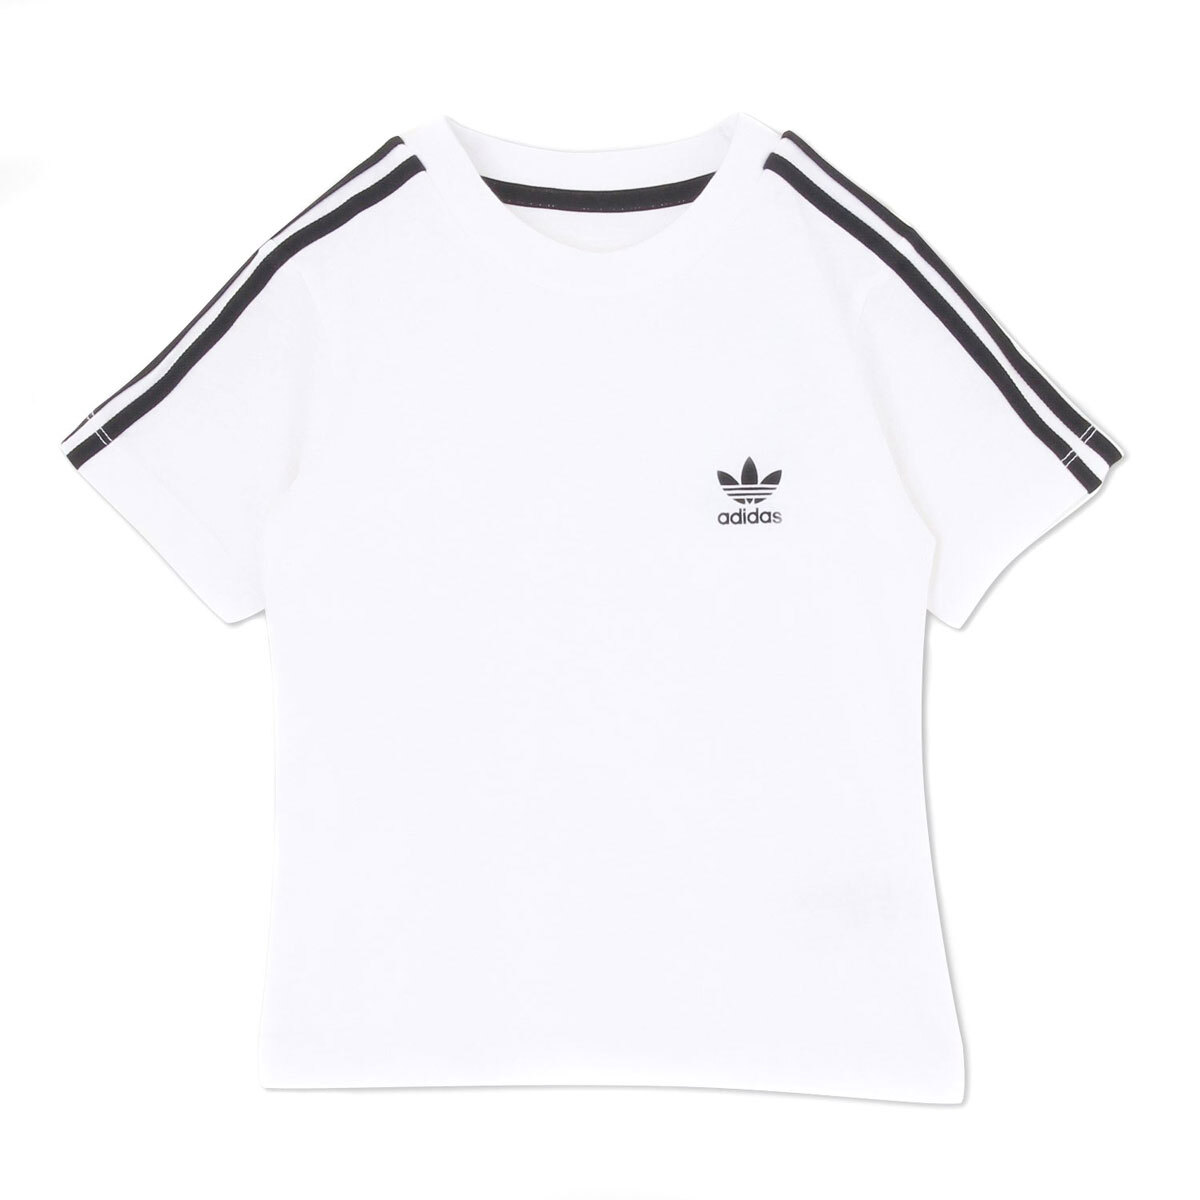 Adidas Youth Tee 3 Stripes White/Black